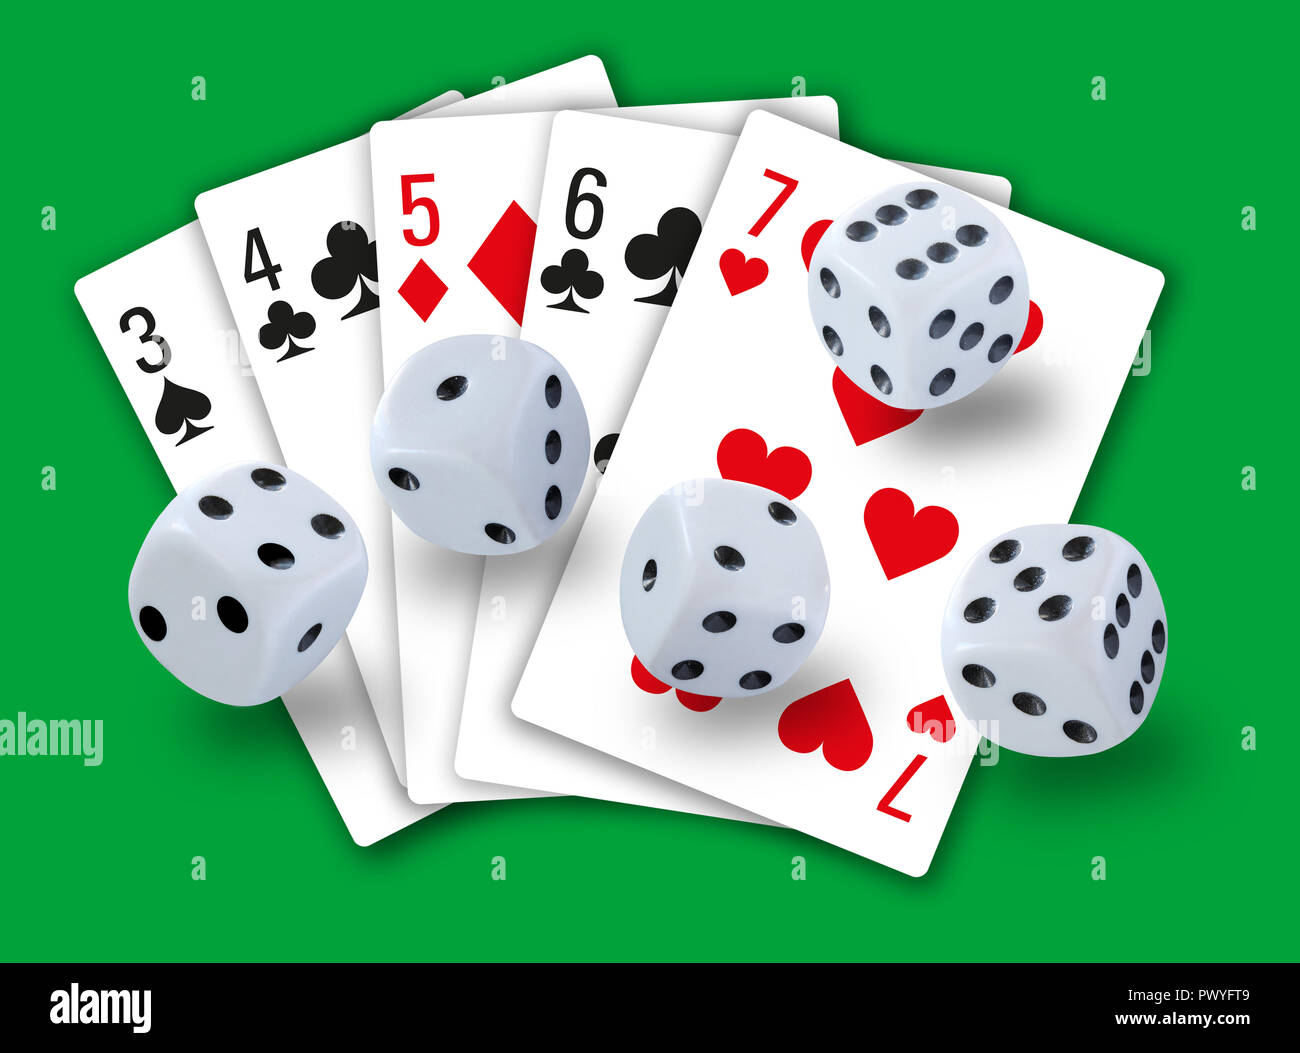 Spiel mit Würfel rollen und Karten spielen, eine Gerade in Clubs, Karo,  Herz und Pik im Hintergrund - einfaches, sauberes Design Stockfotografie -  Alamy